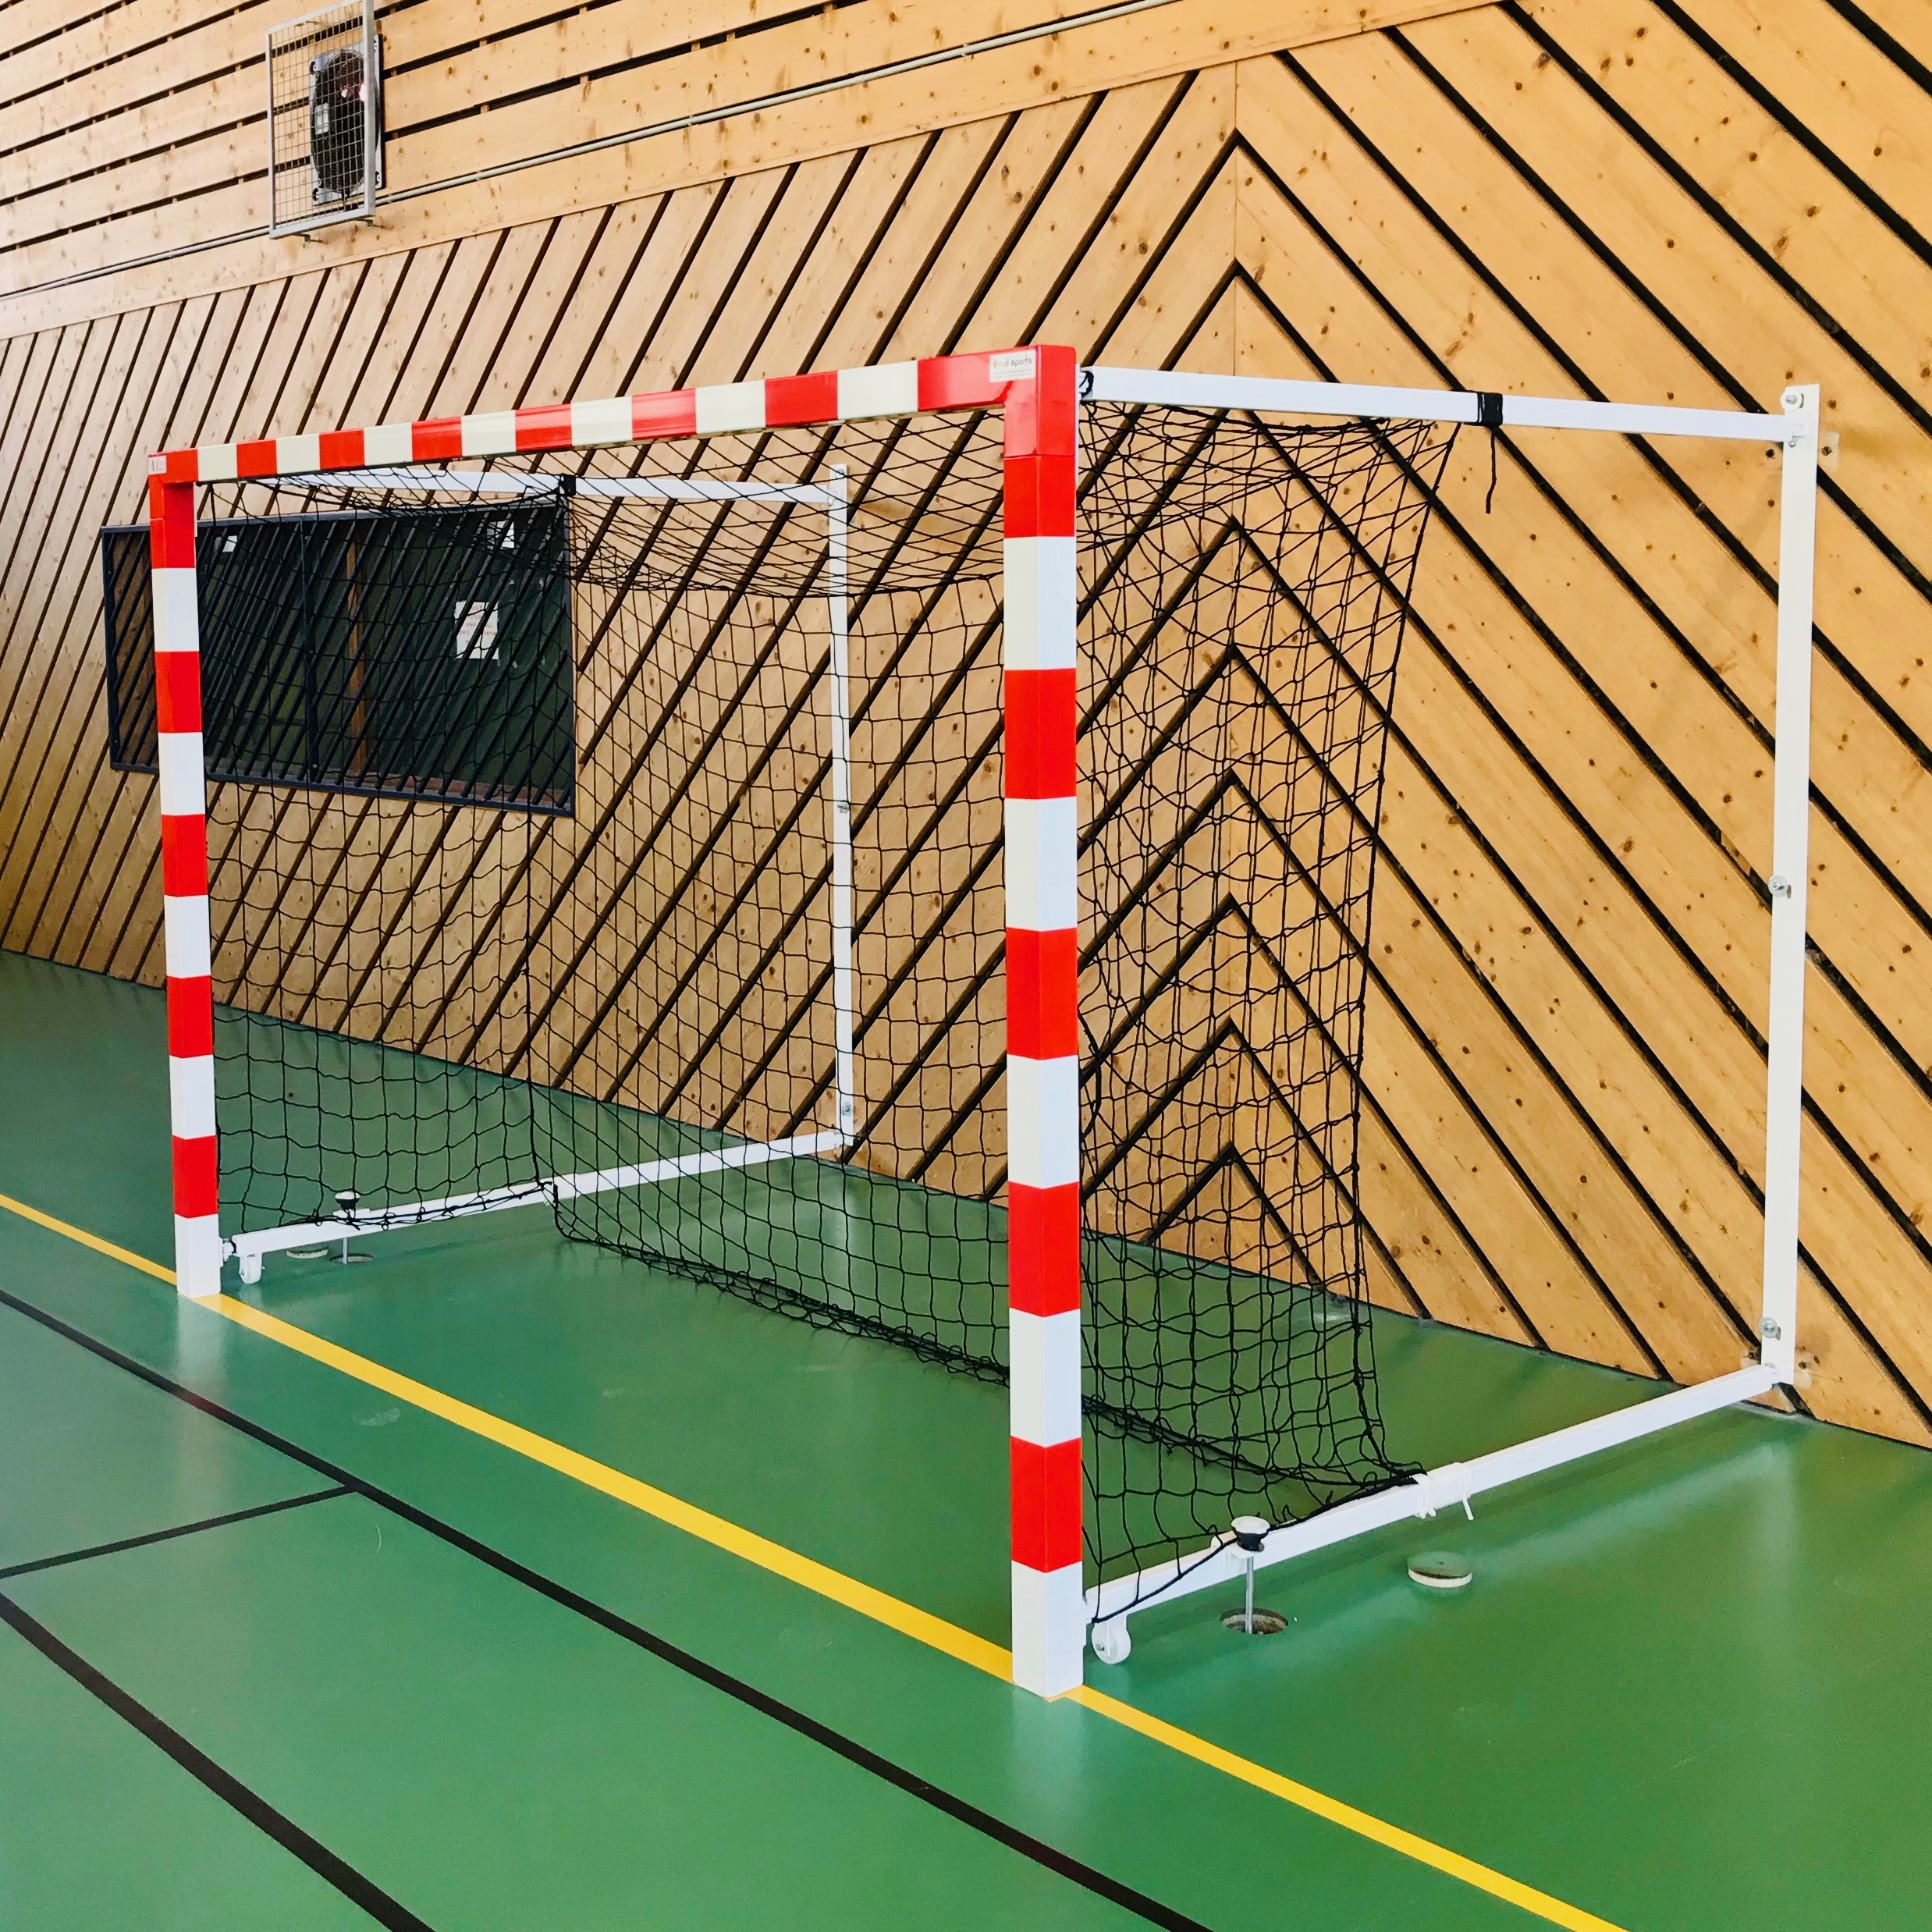 But handball rabattable sur mur